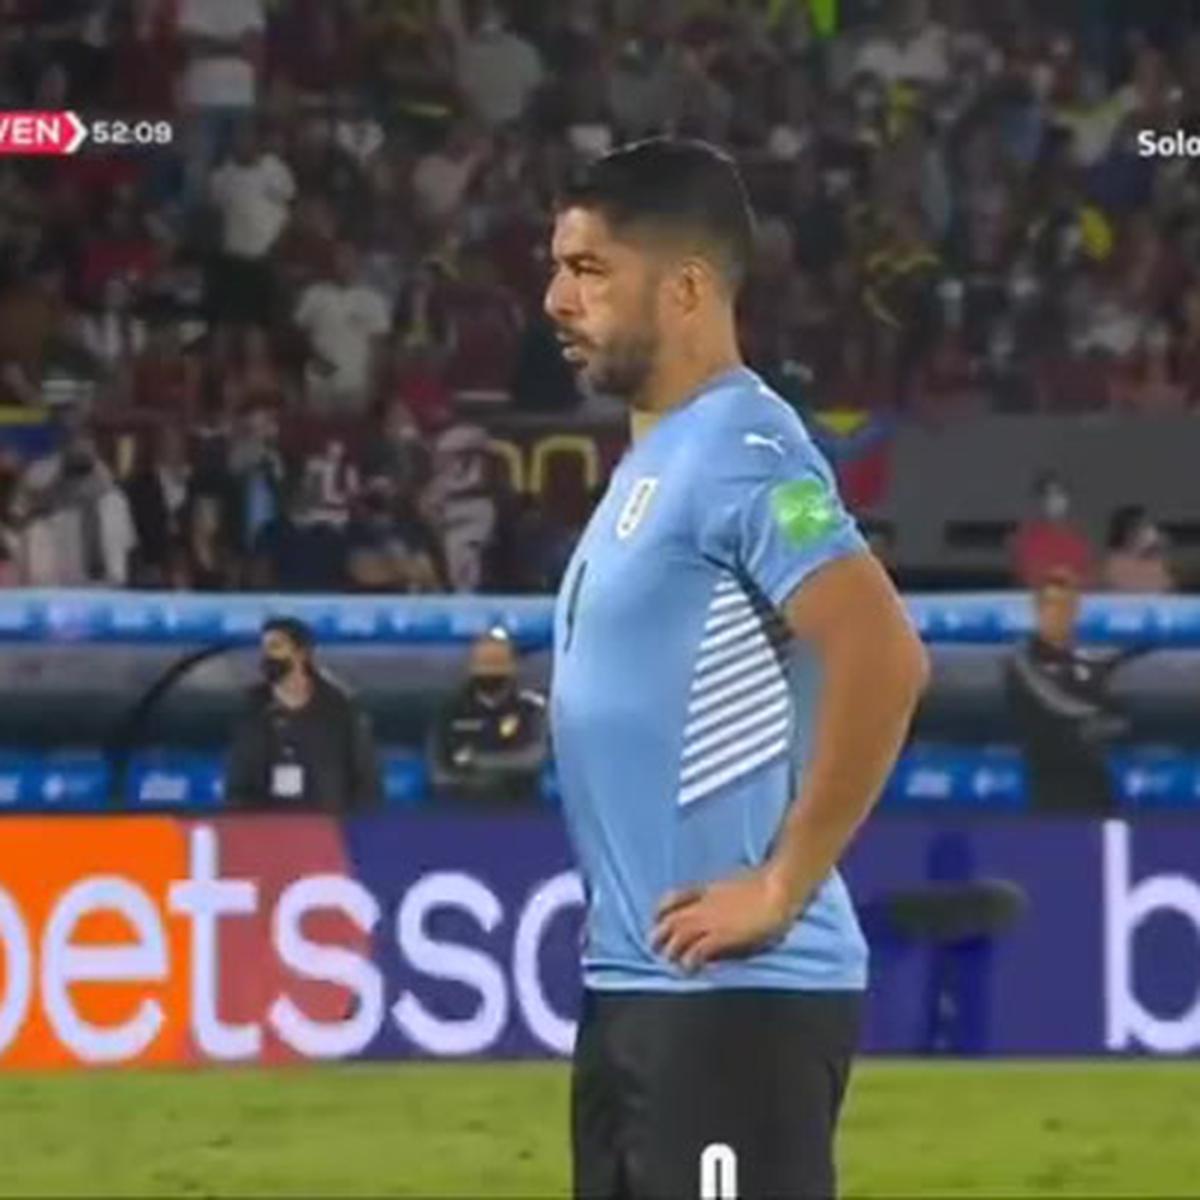 Venezuela 1-4 Uruguay: resumen, goles y resultado 